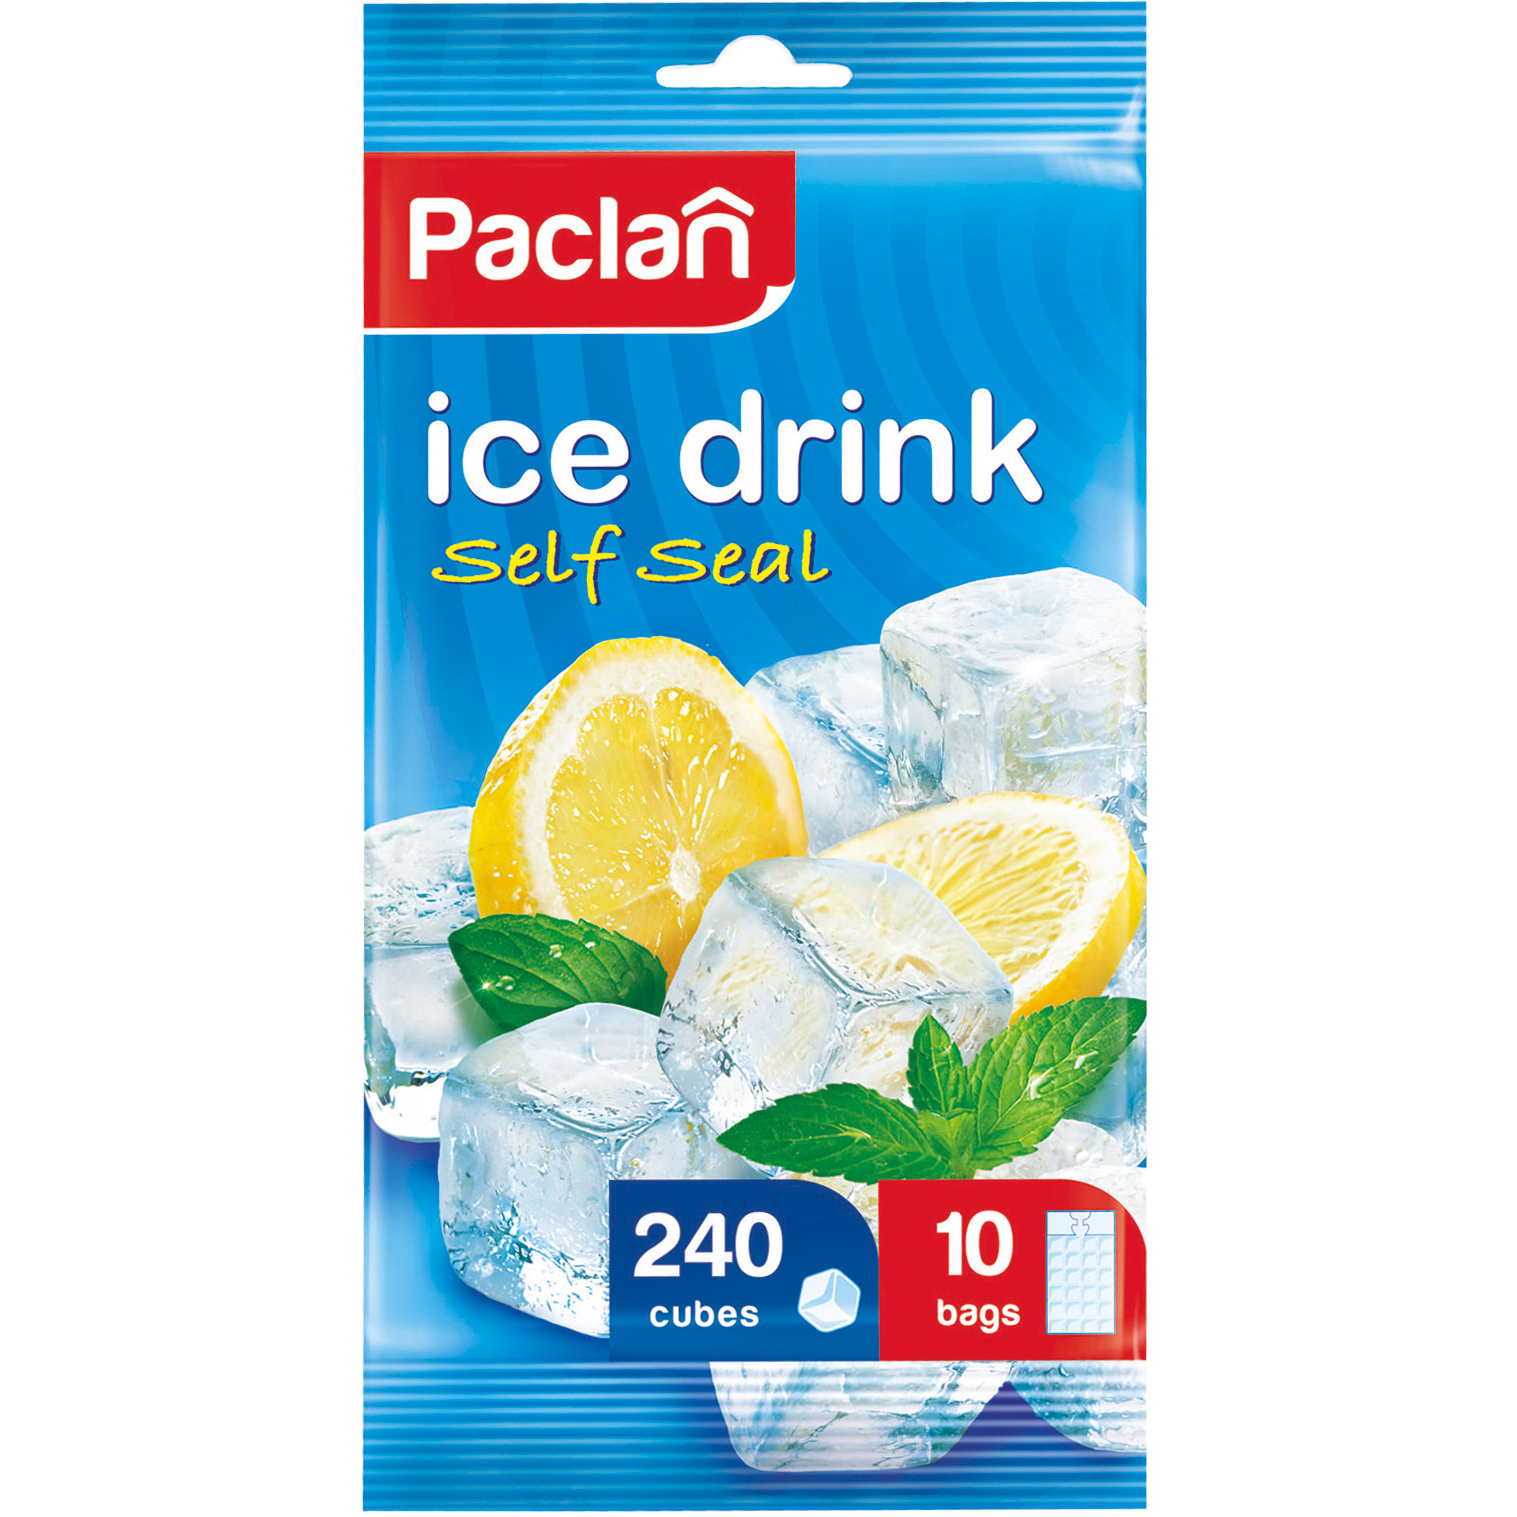 пакеты для льда paclan 24 ячейки 8шт Пакеты для льда Paclan, 24 ячейки х 10 шт